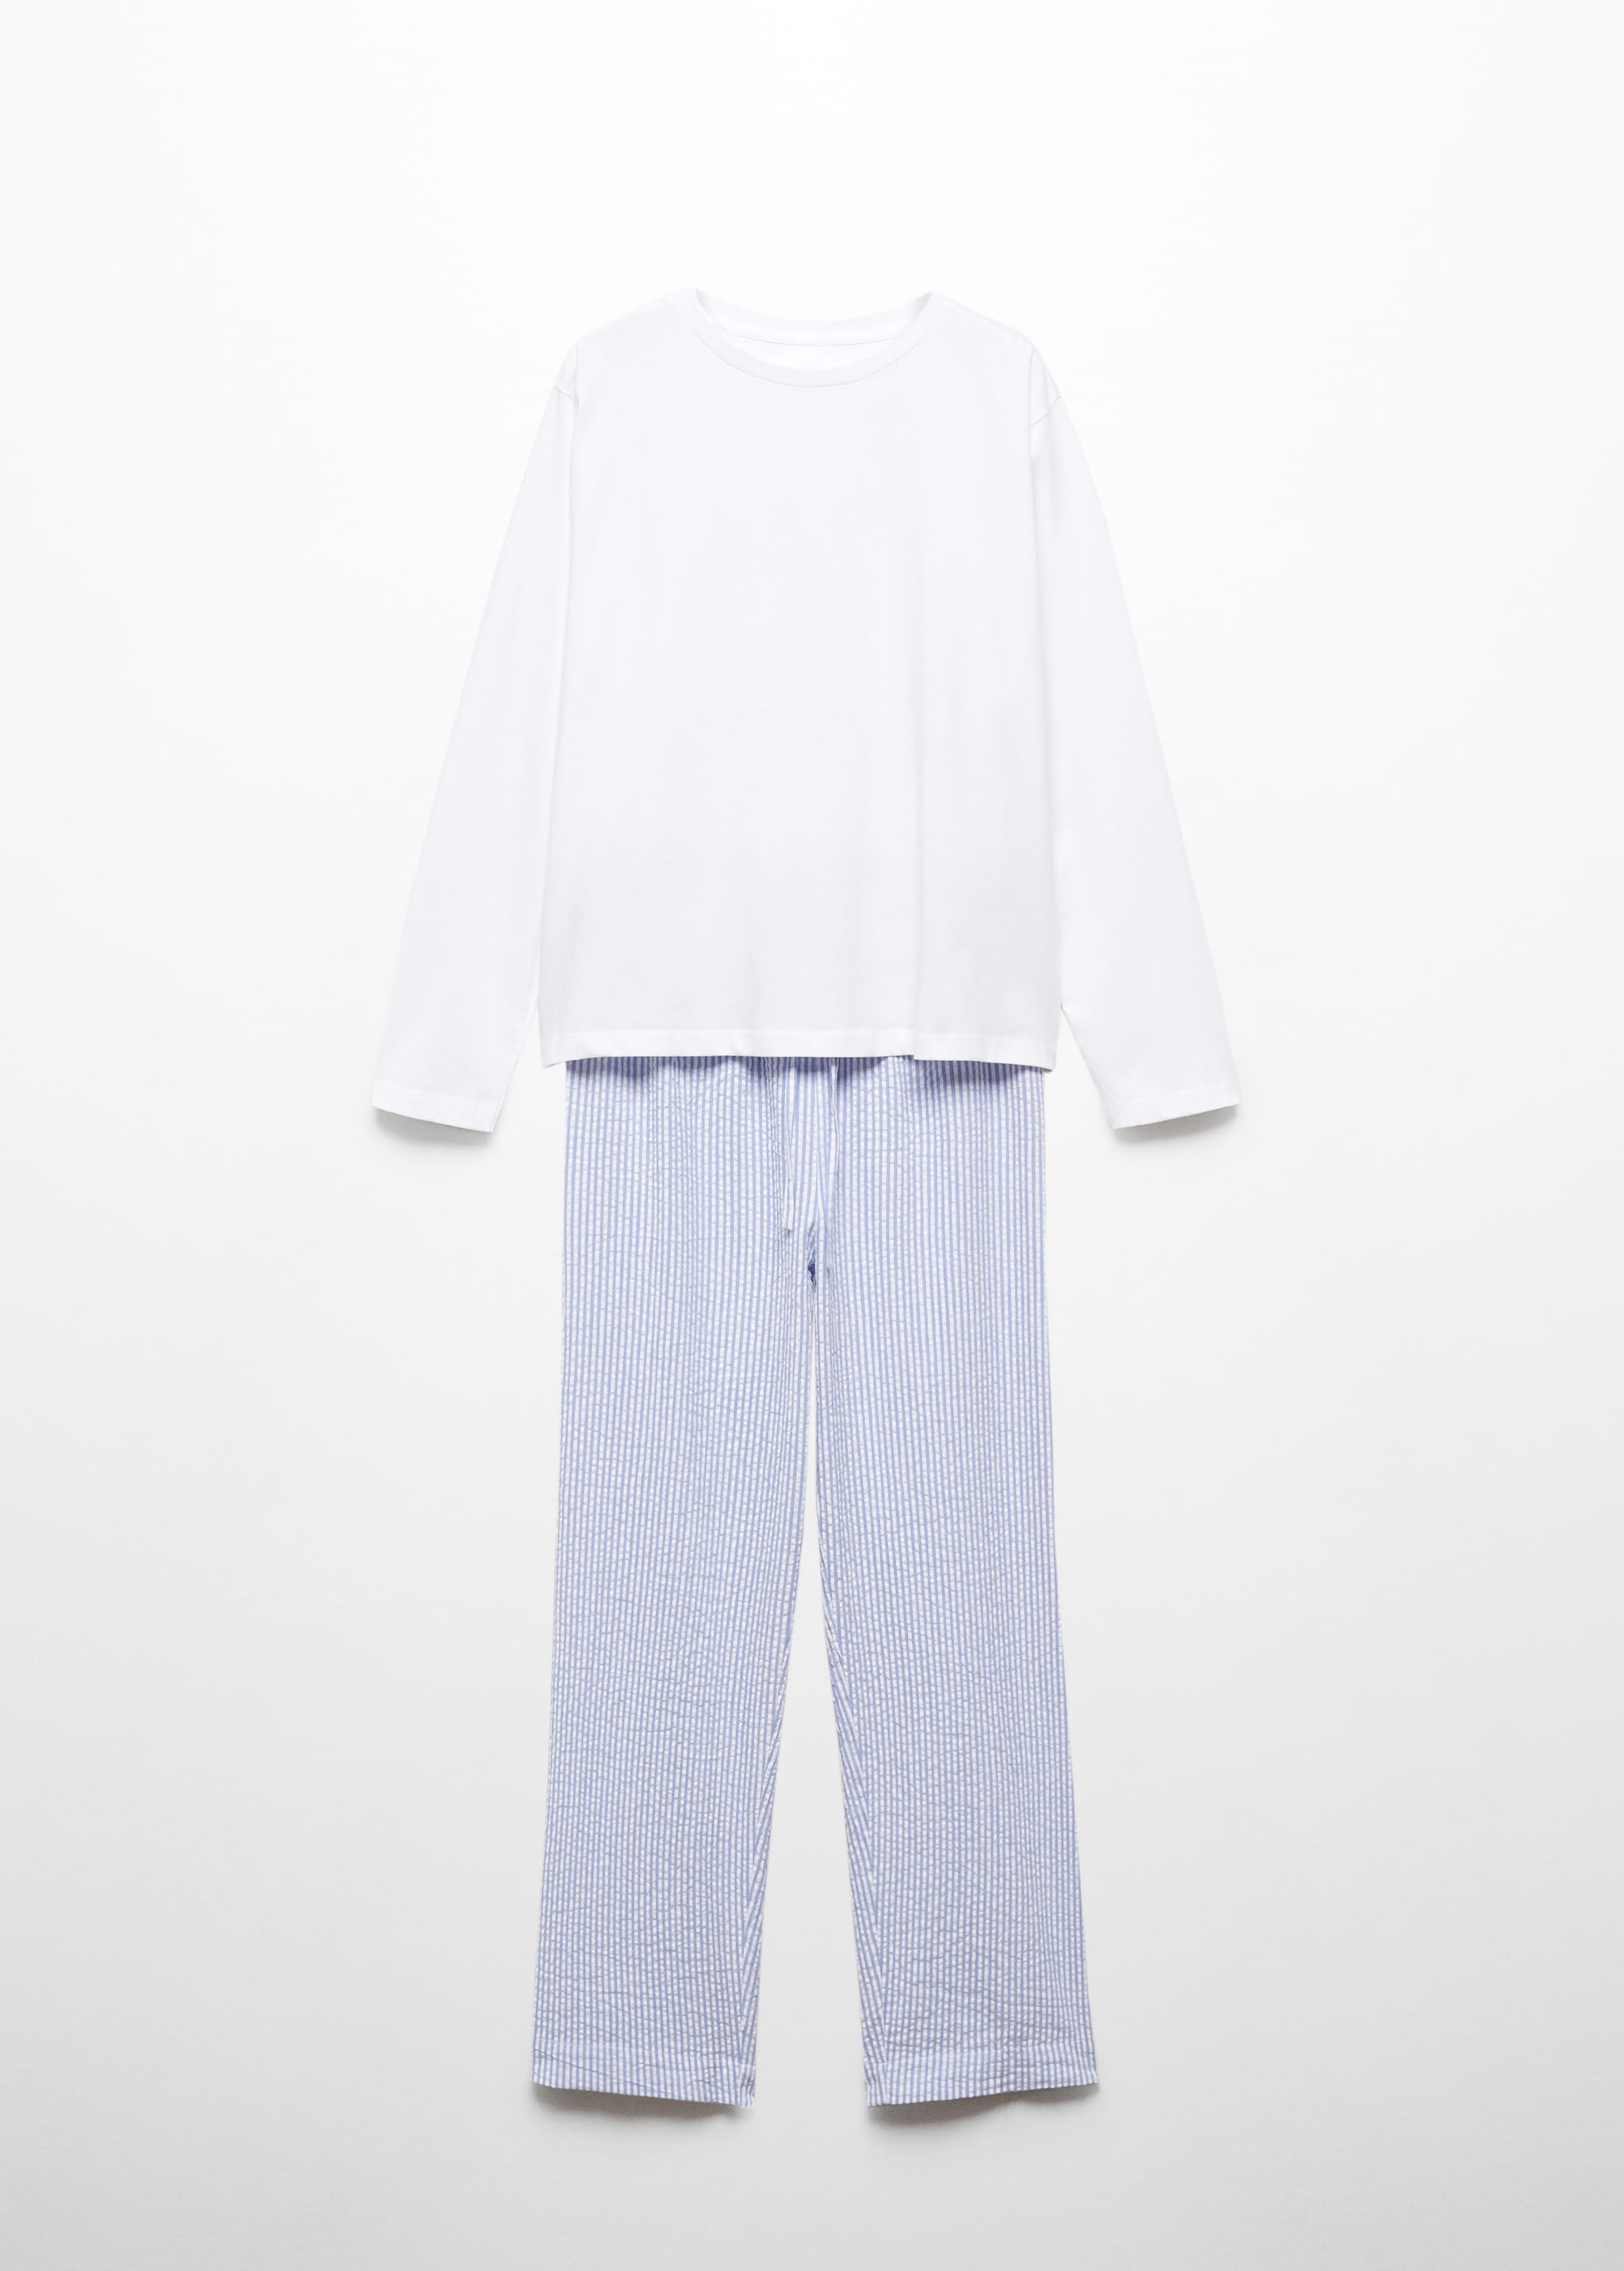 Хлопковая пижама из двух частей в полоску - Изделие без модели